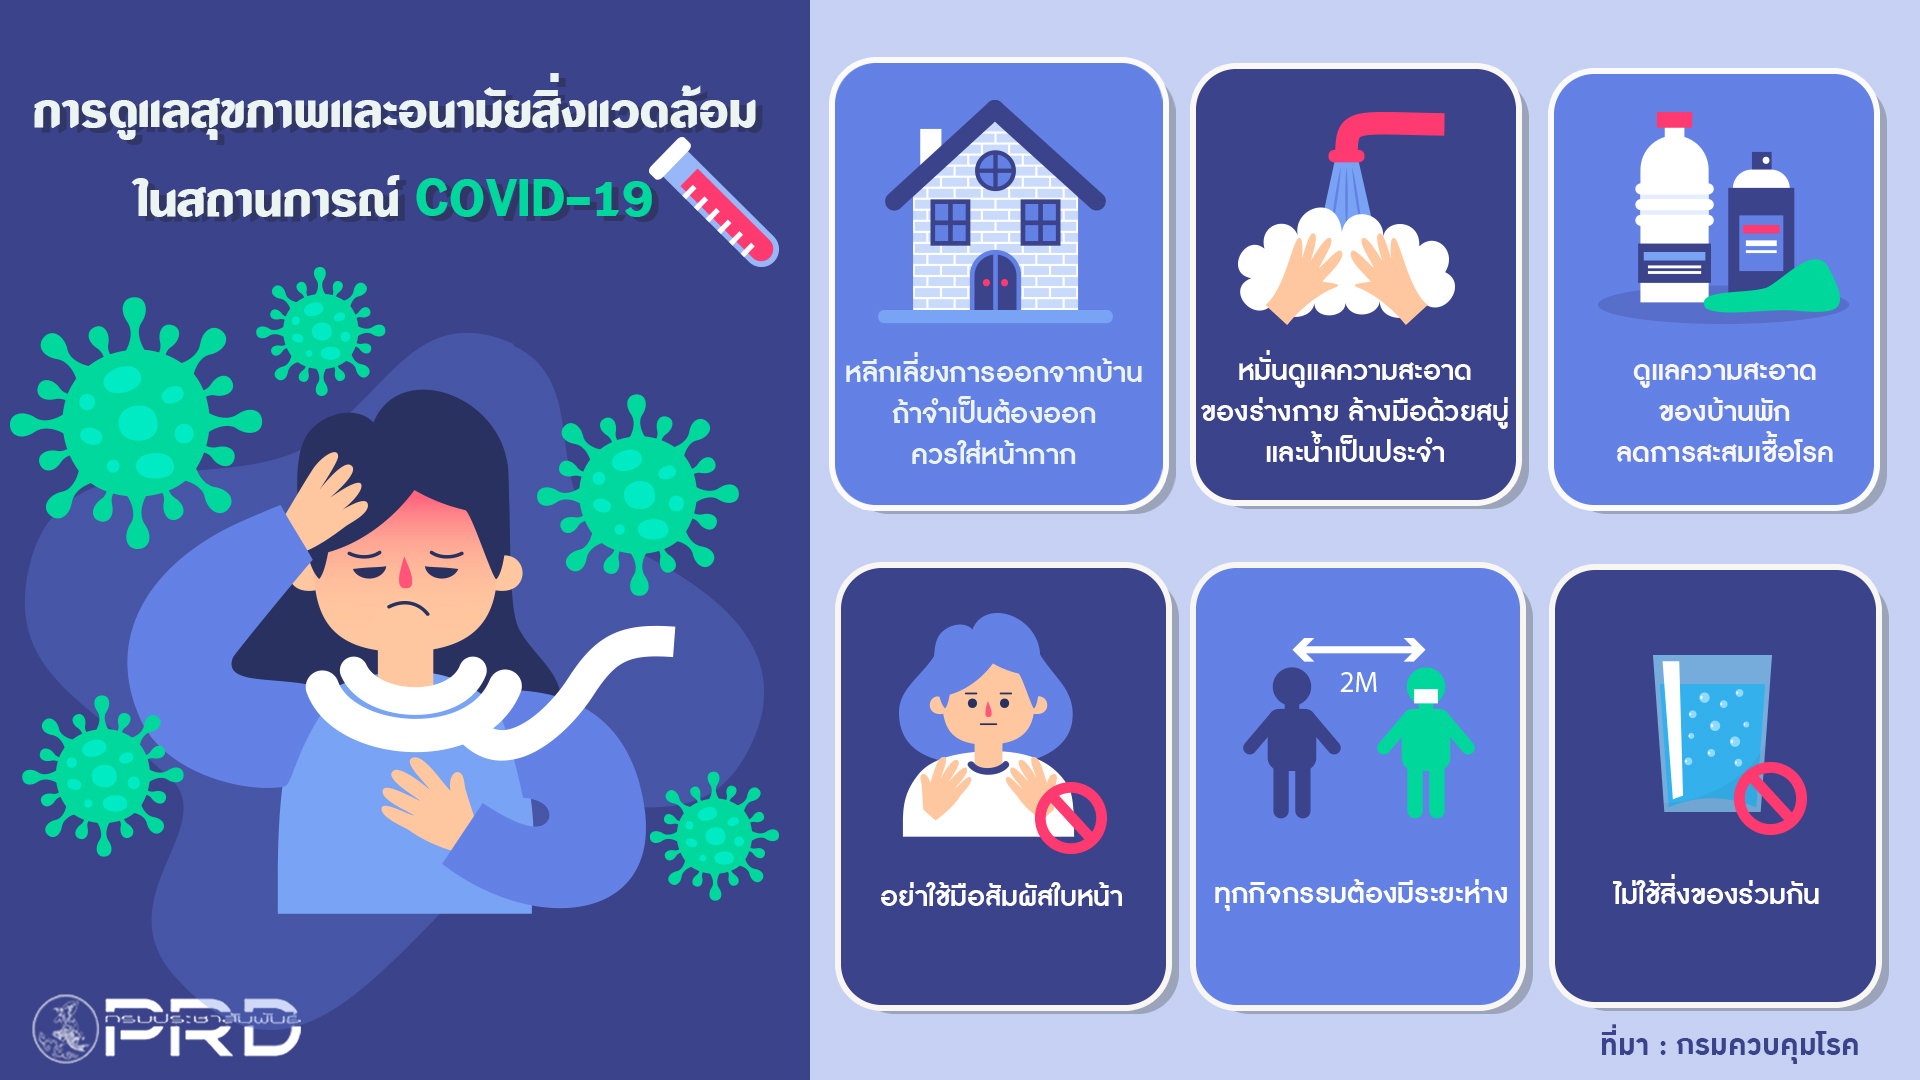 การดูแลสุขภาพและอนามัยสิ่งแวดล้อม ในสถานการณ์ COVID-19